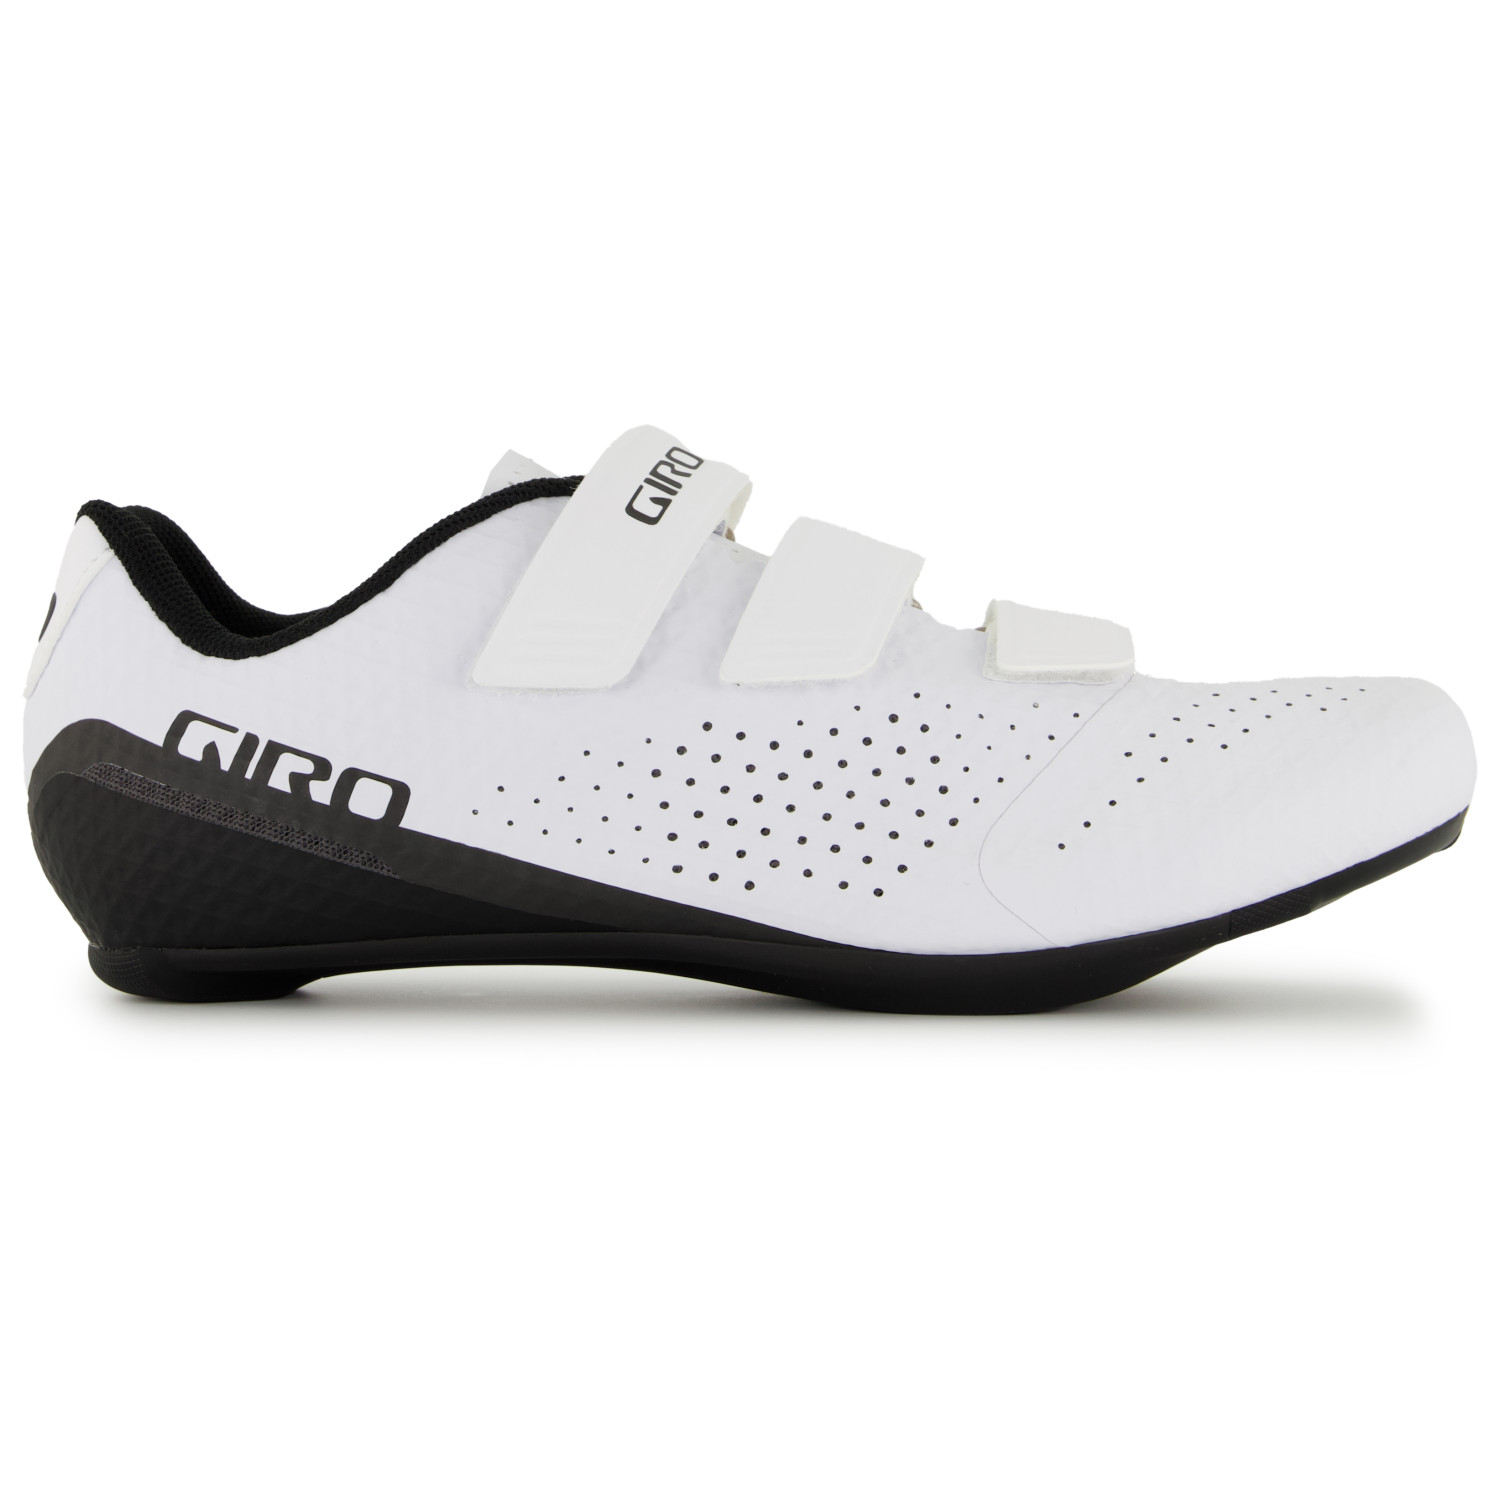 Велосипедная обувь Giro Giro Stylus, белый велосипедная обувь cadet женская giro белый